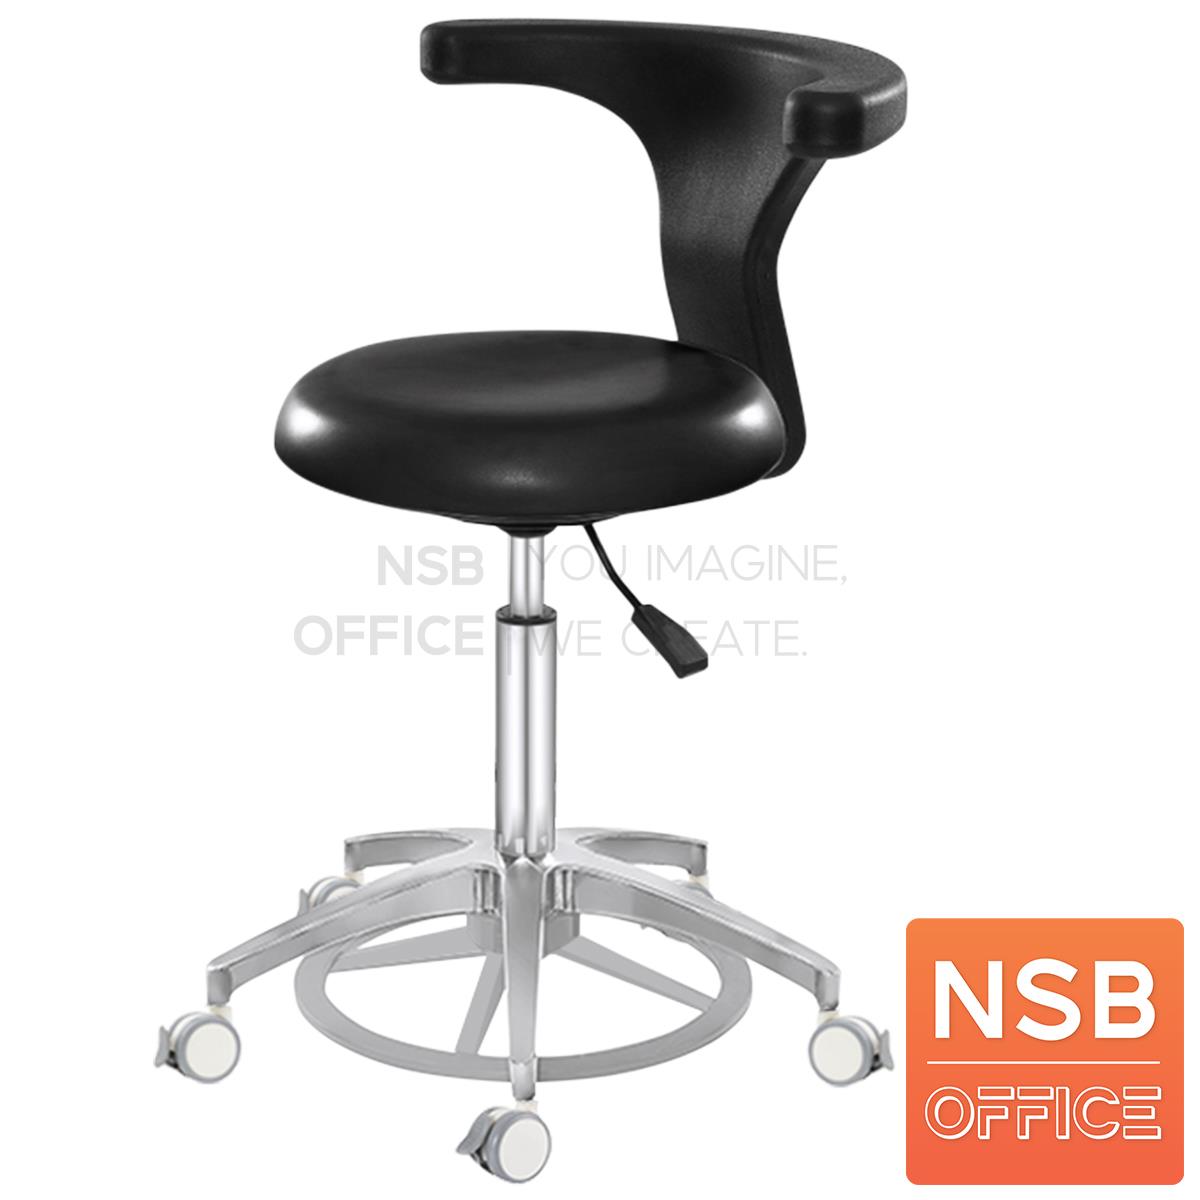 B32A002:เก้าอี้คุณหมอ รุ่น Mocking (ม็อกกิ้ง)  ขาอลูมีเนียม ลูกล้อเก็บเสียง (ปรับระดับด้วยเท้า)